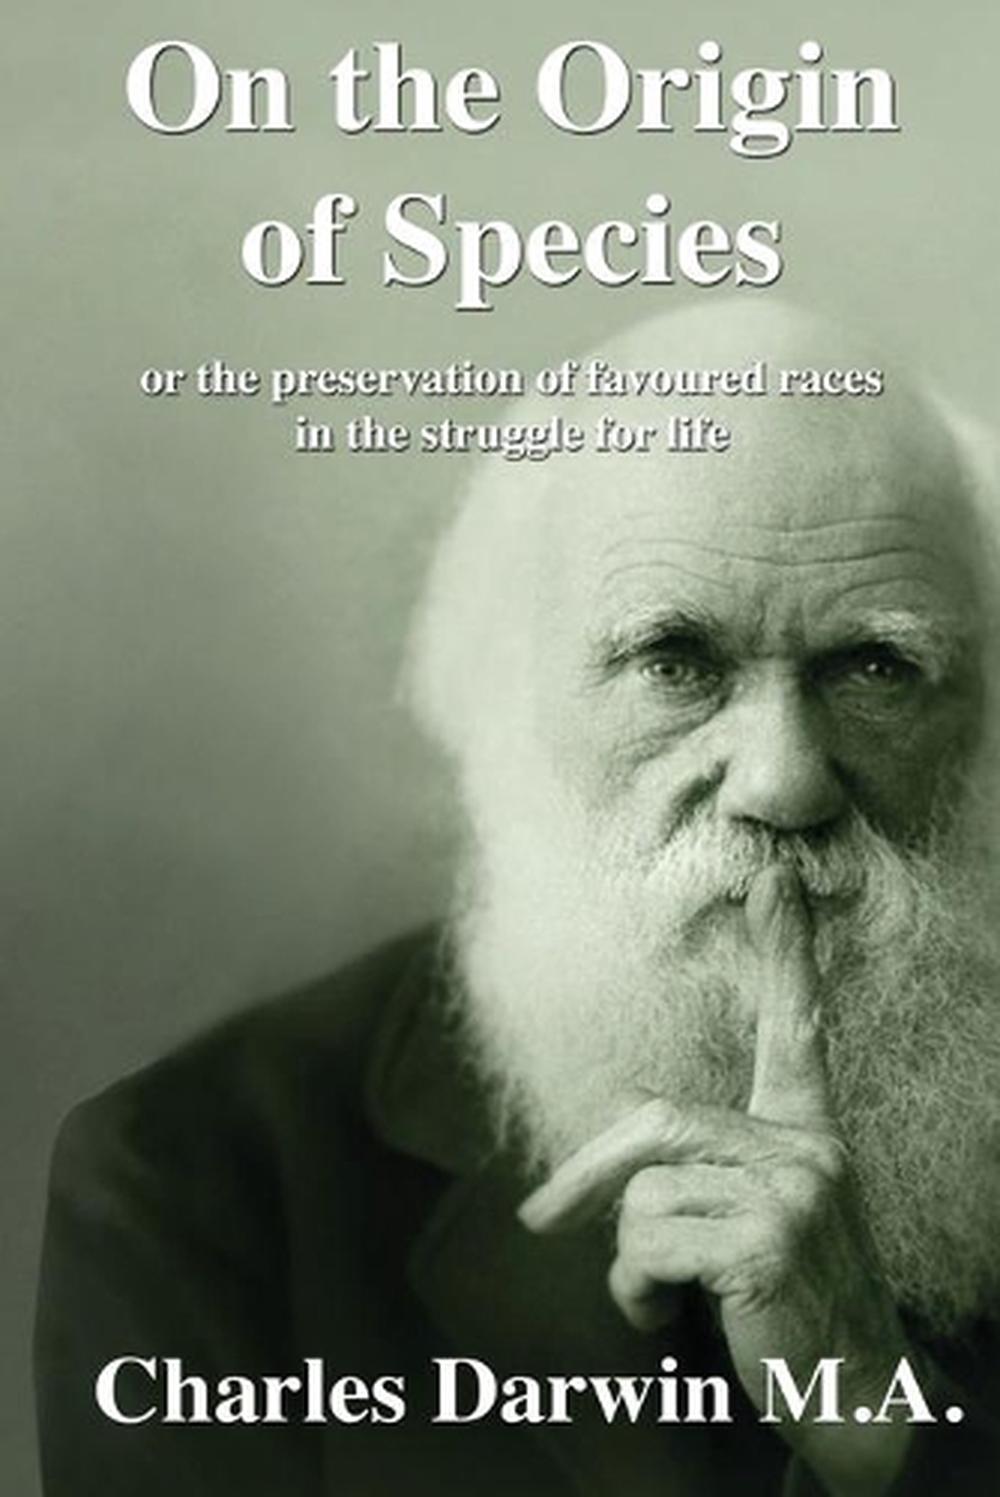 the origin of species by charles darwin